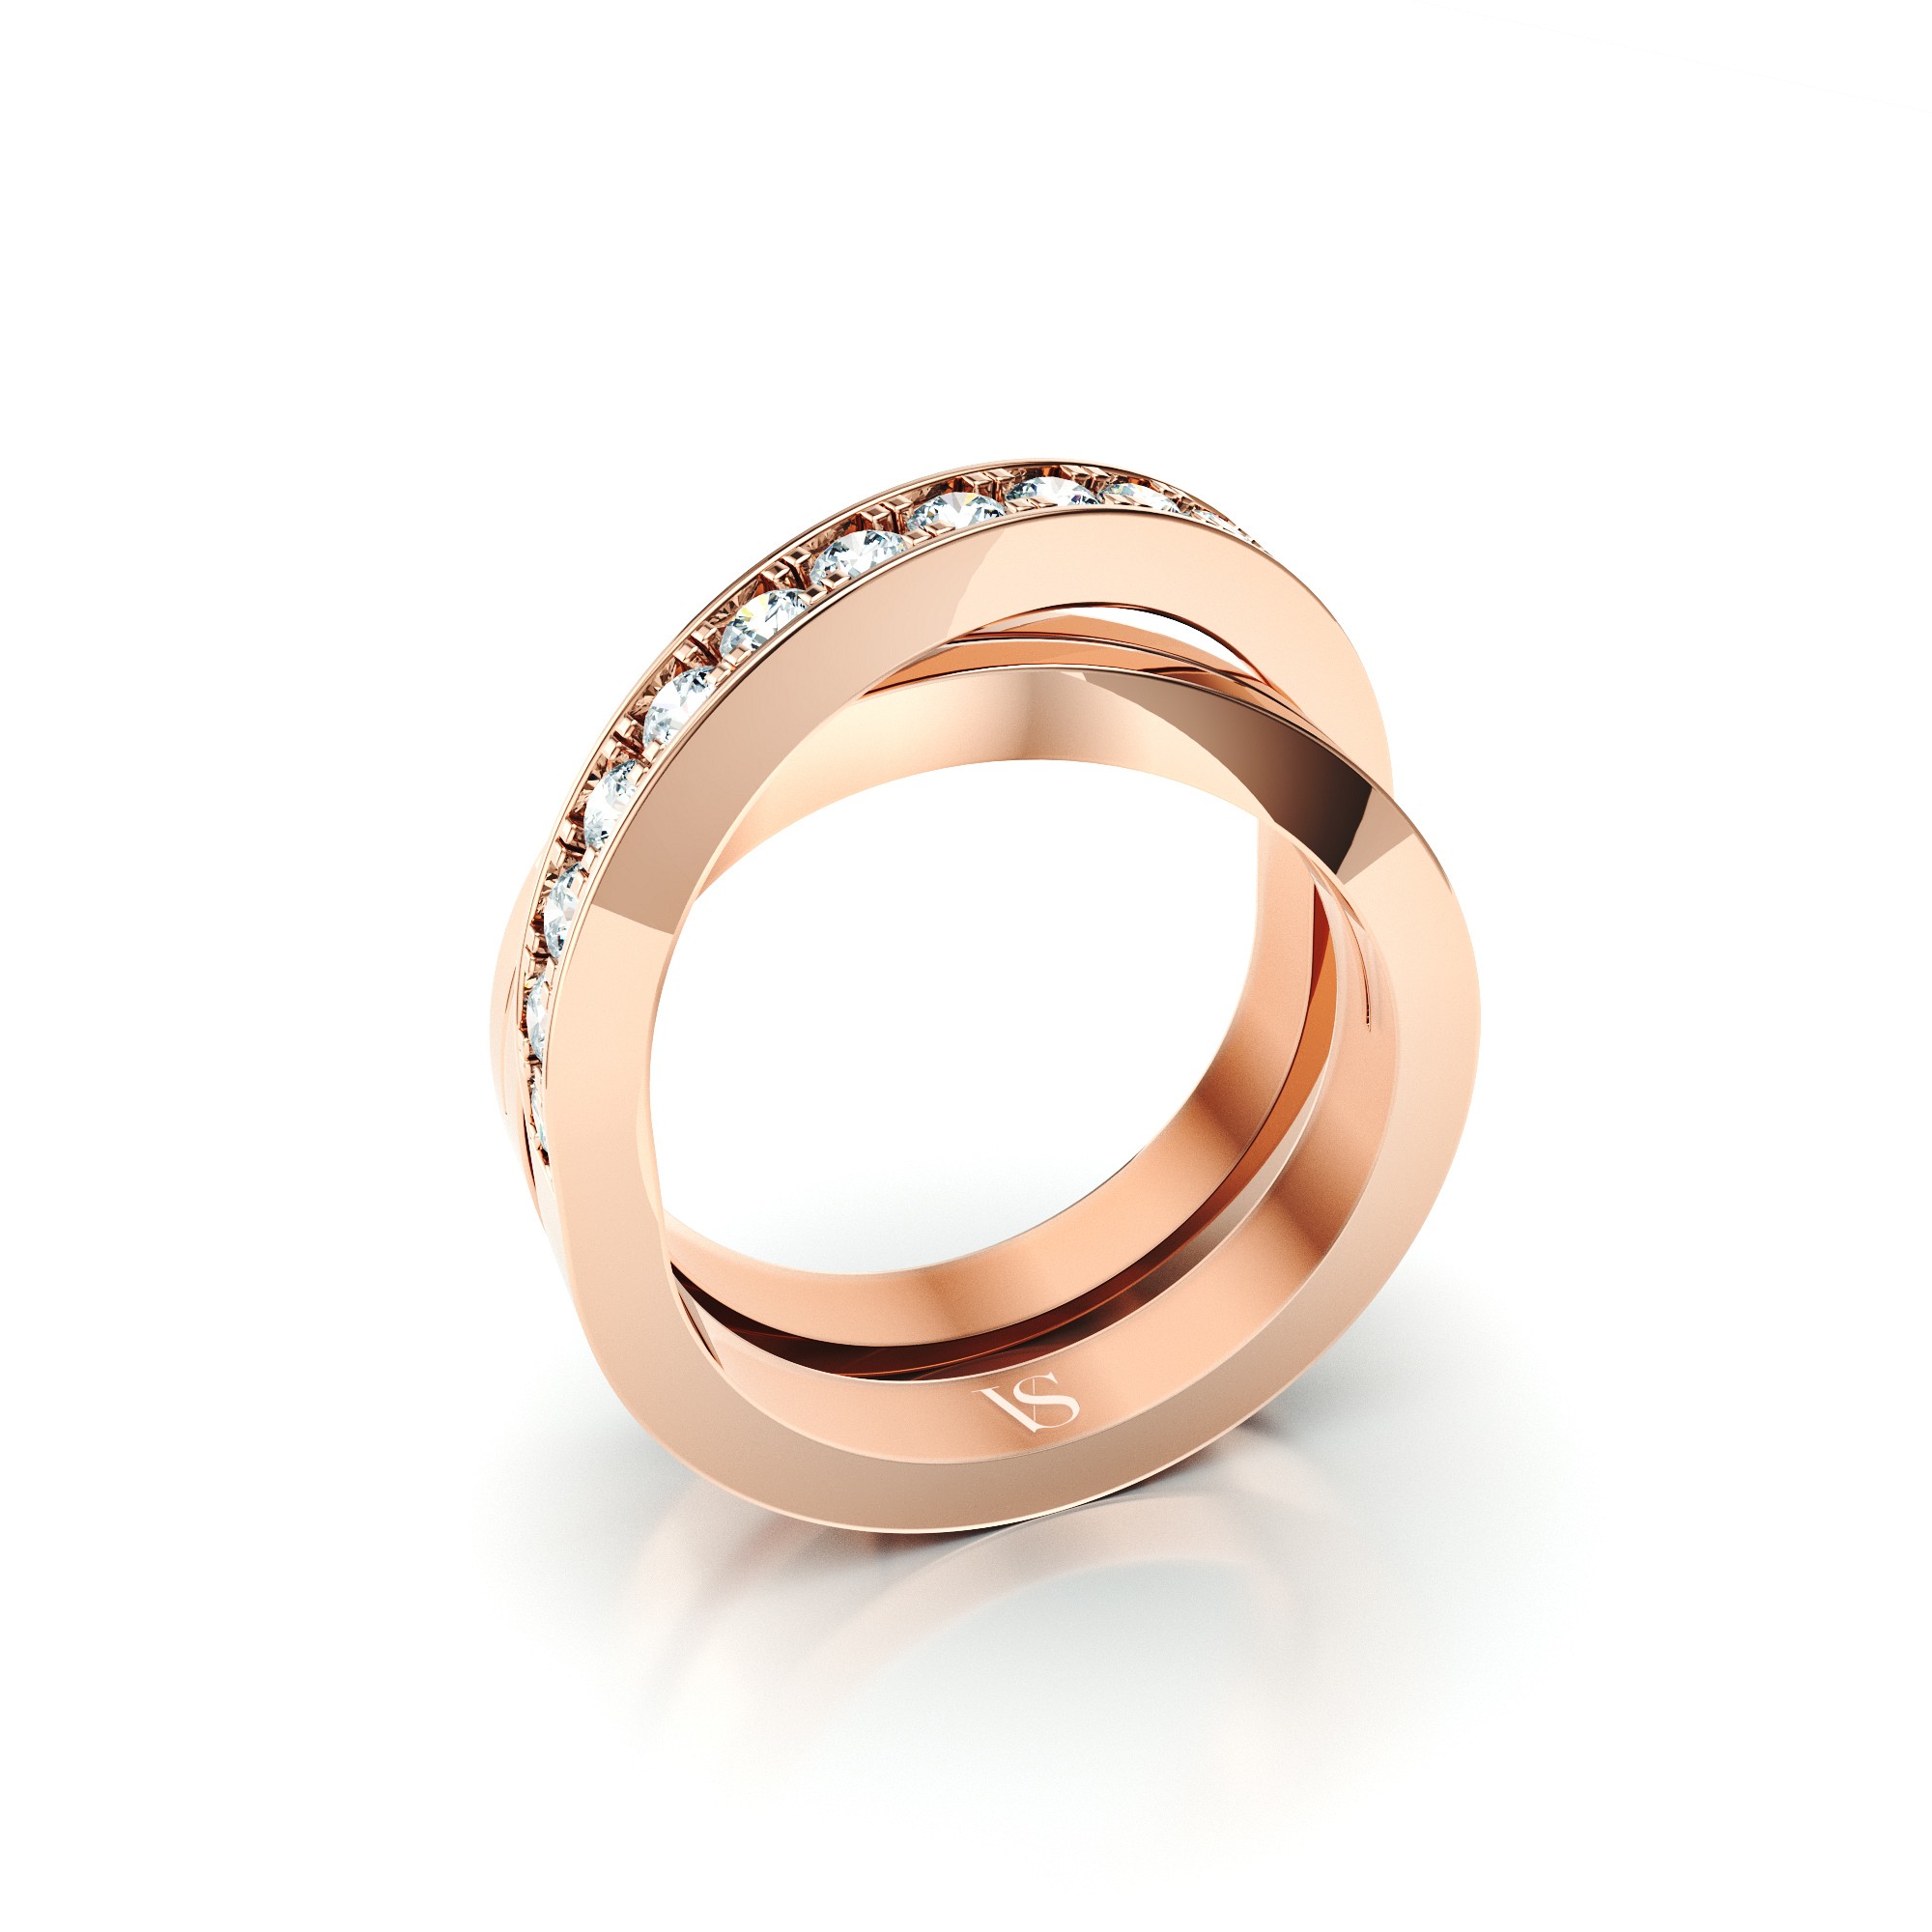 Šperk na zakázku VS107 – růžové zlato